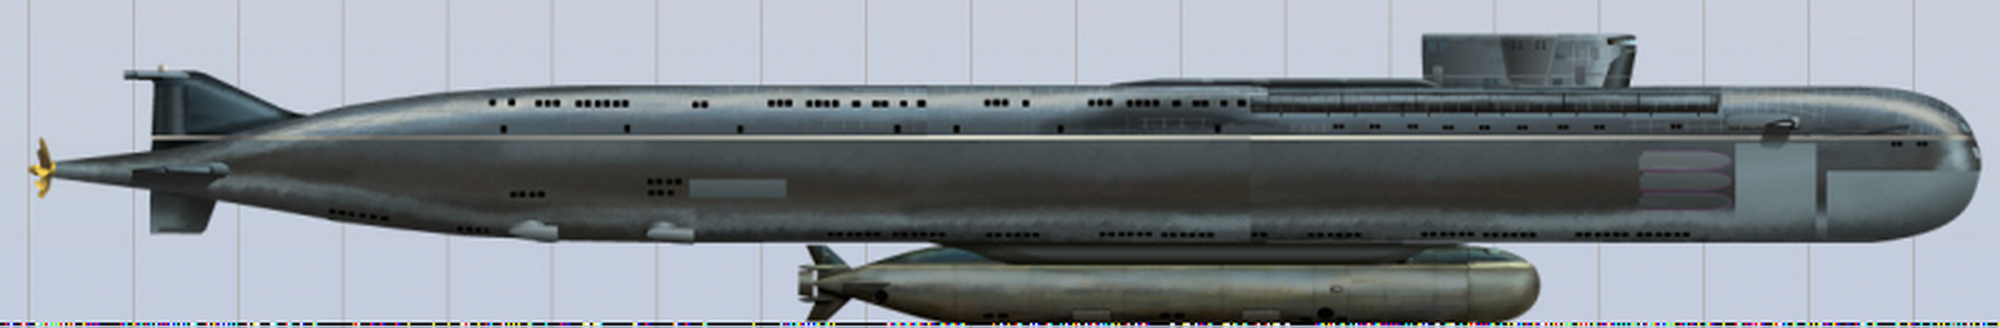 Экспериментальная атомная подводная лодка «Белгород» завершит испытания к сентябрю этого года